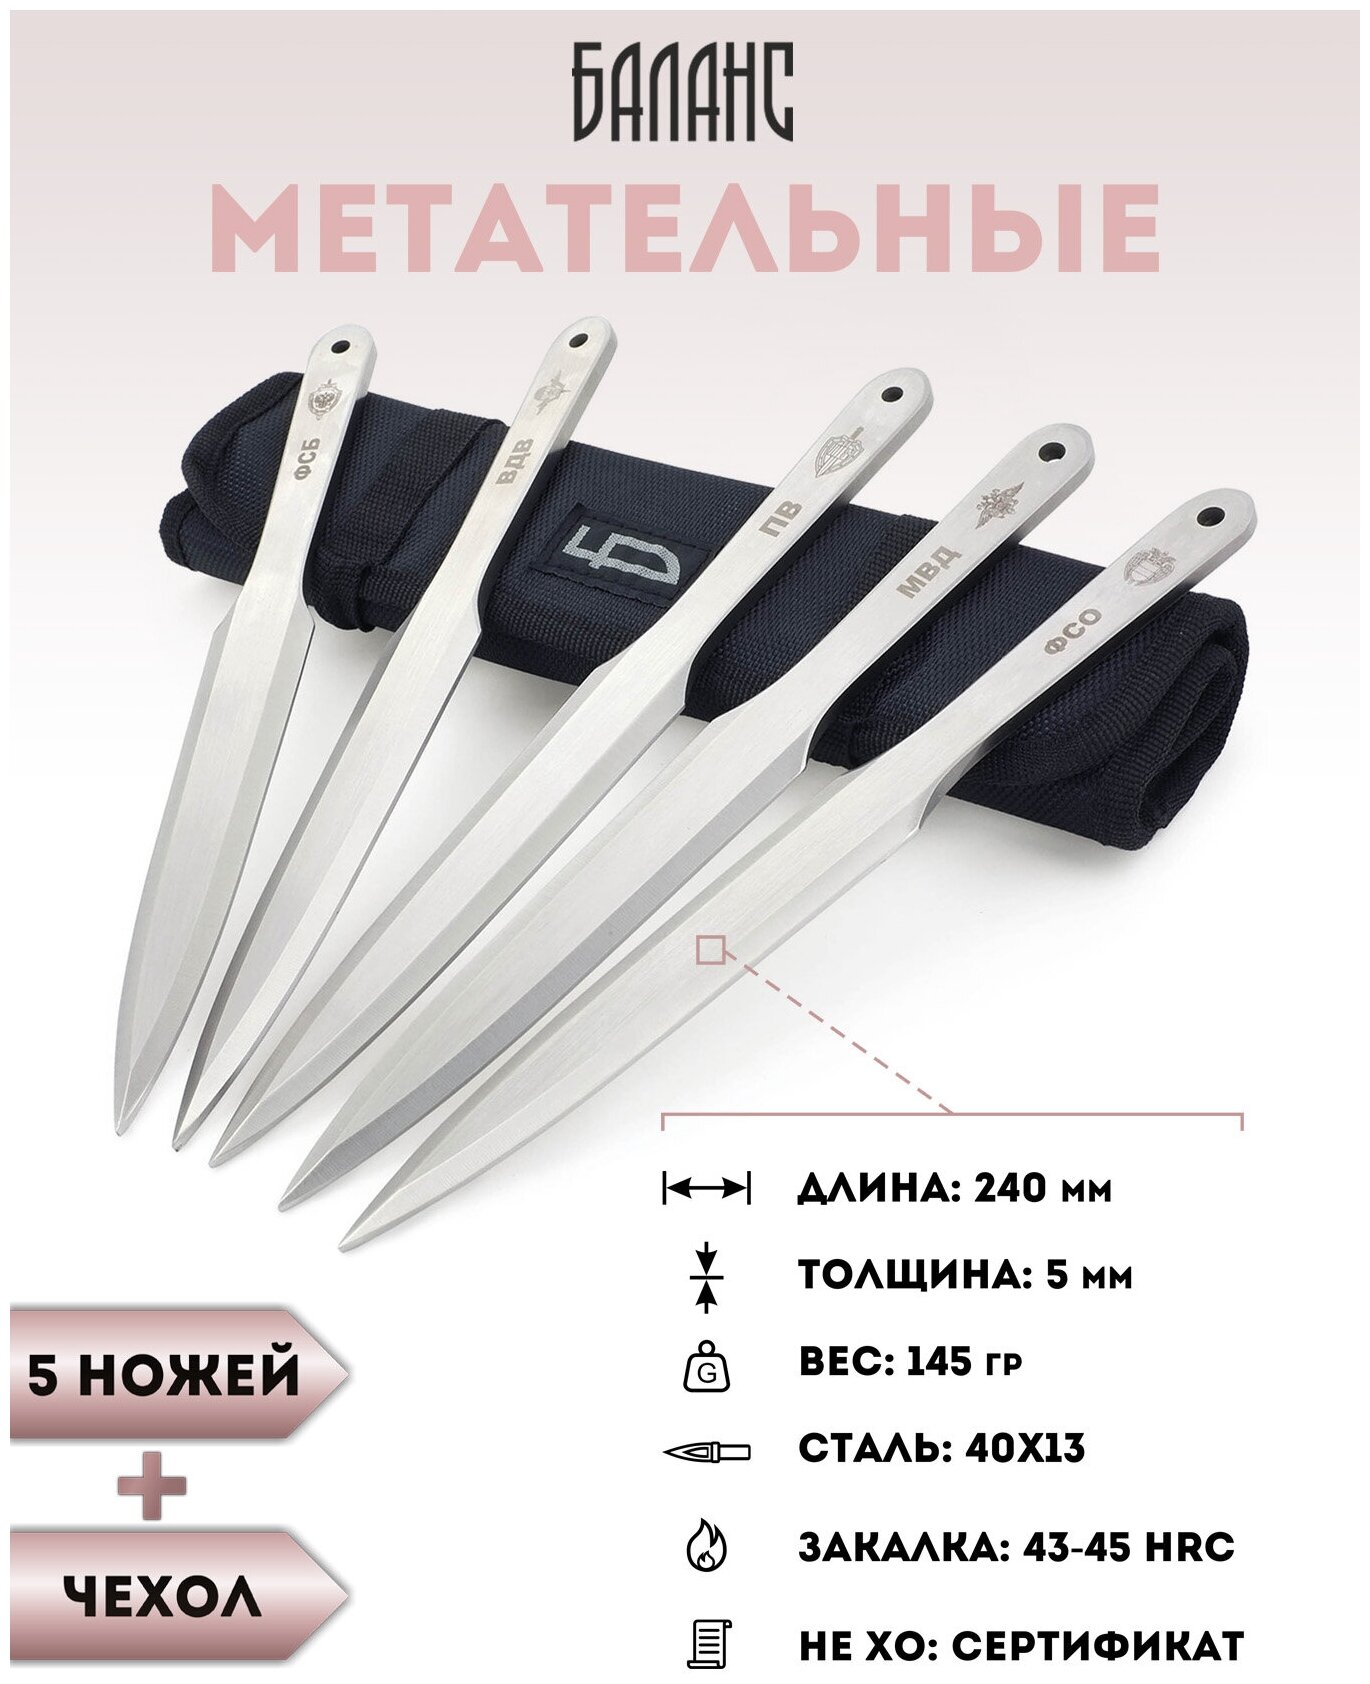 Набор ножей для метания спортивного 5 шт Ножемир Баланс M-132N в нейлоновом чехле